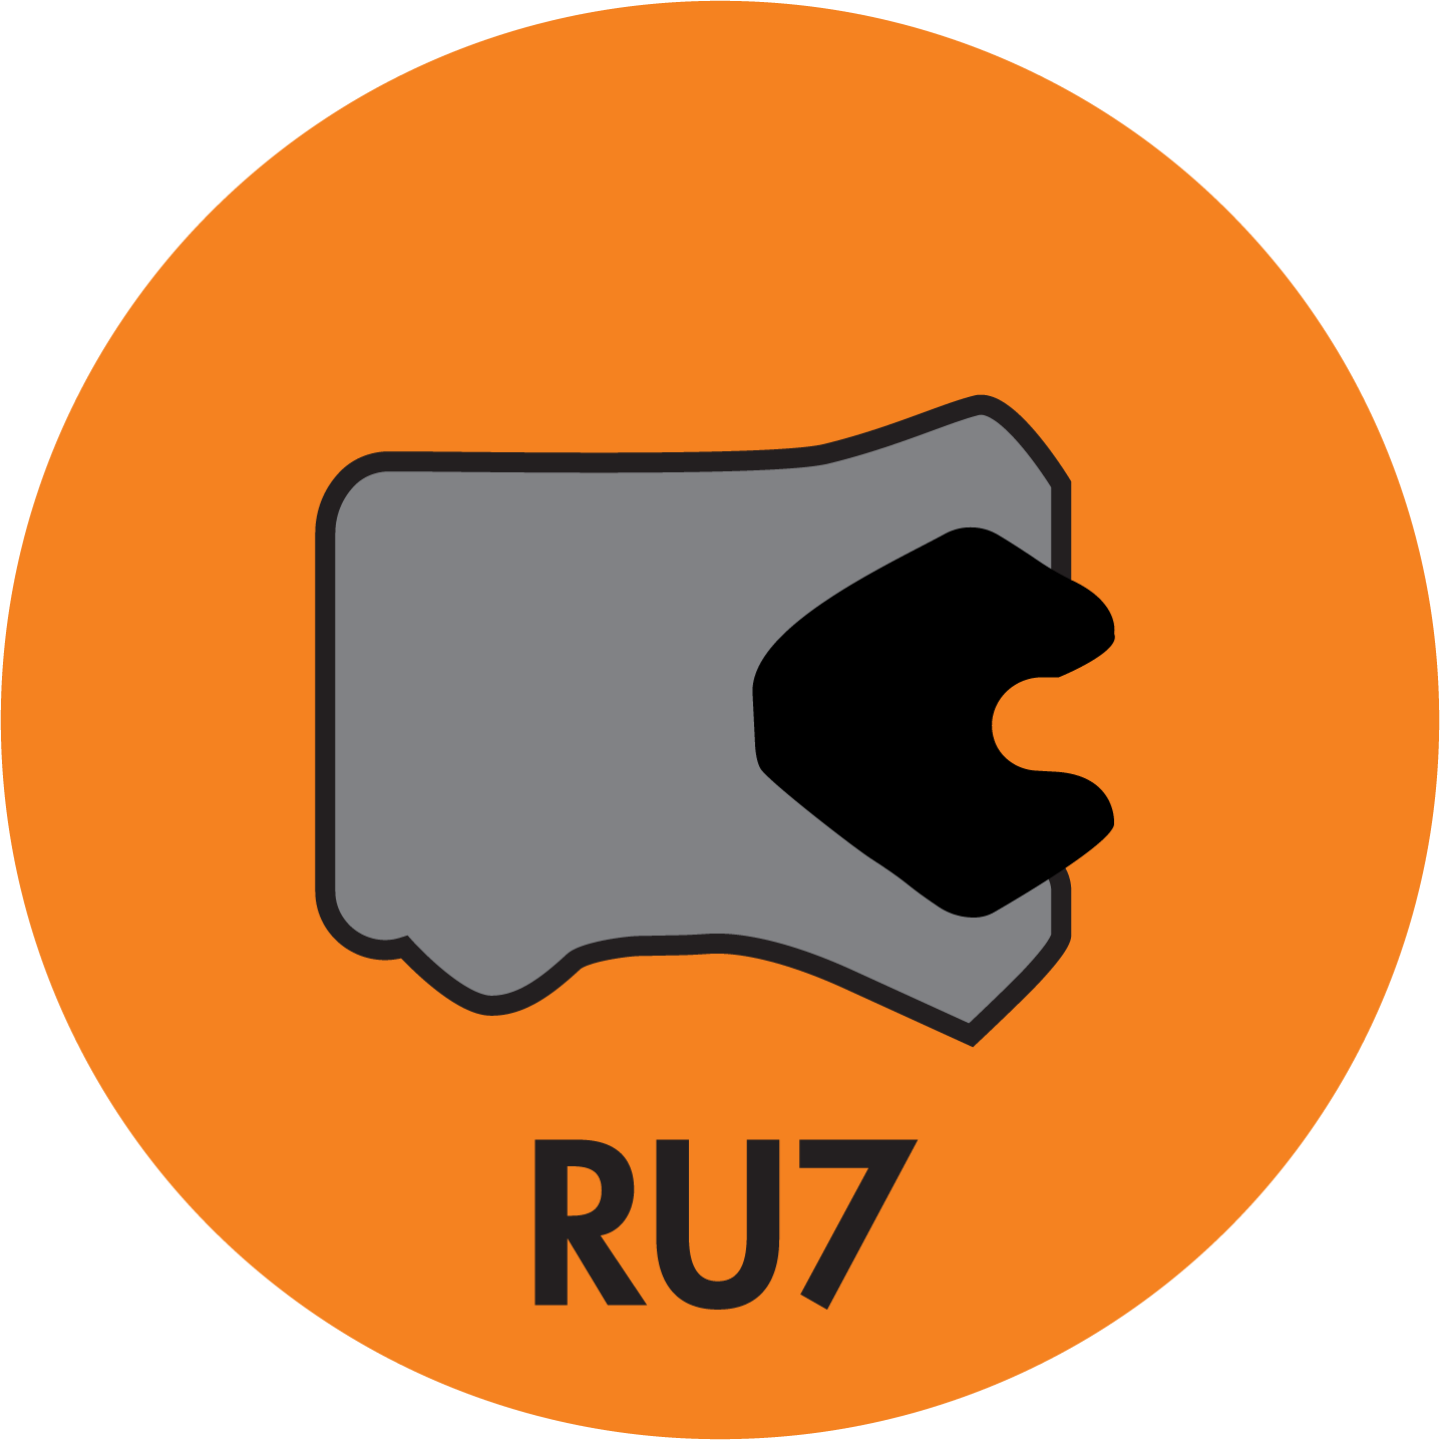 RU7 TWIN LIP ROD (LOADED) U-CUP (AU+NBR) - RU7-18701500-312-P92E Image 1